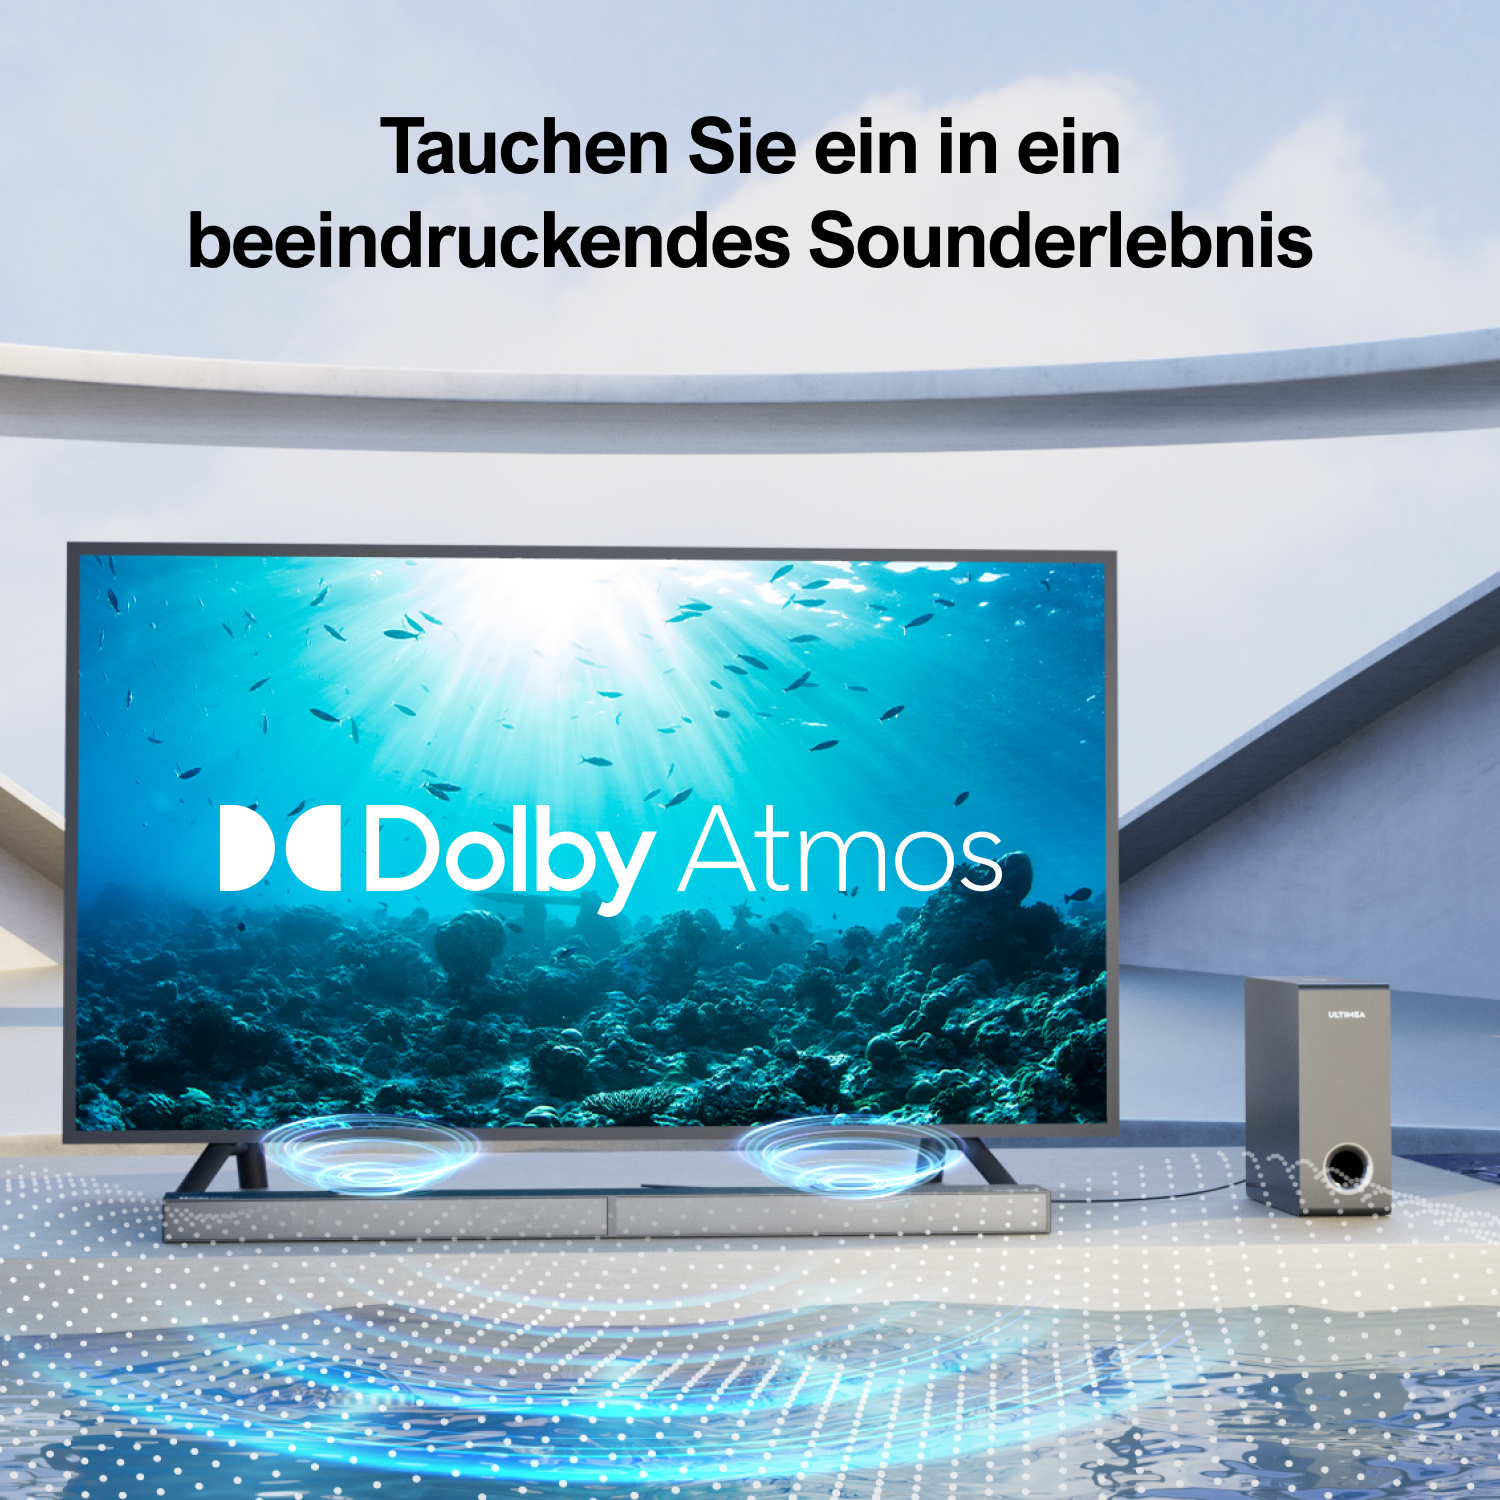 - S70 Soundbar, Nova Geräte, Schwarz Atmos TV Soundbar ULTIMEA 3.1.2ch 2 Up-Firing-Treiber, Dolby 390W, Spitzenleistung für